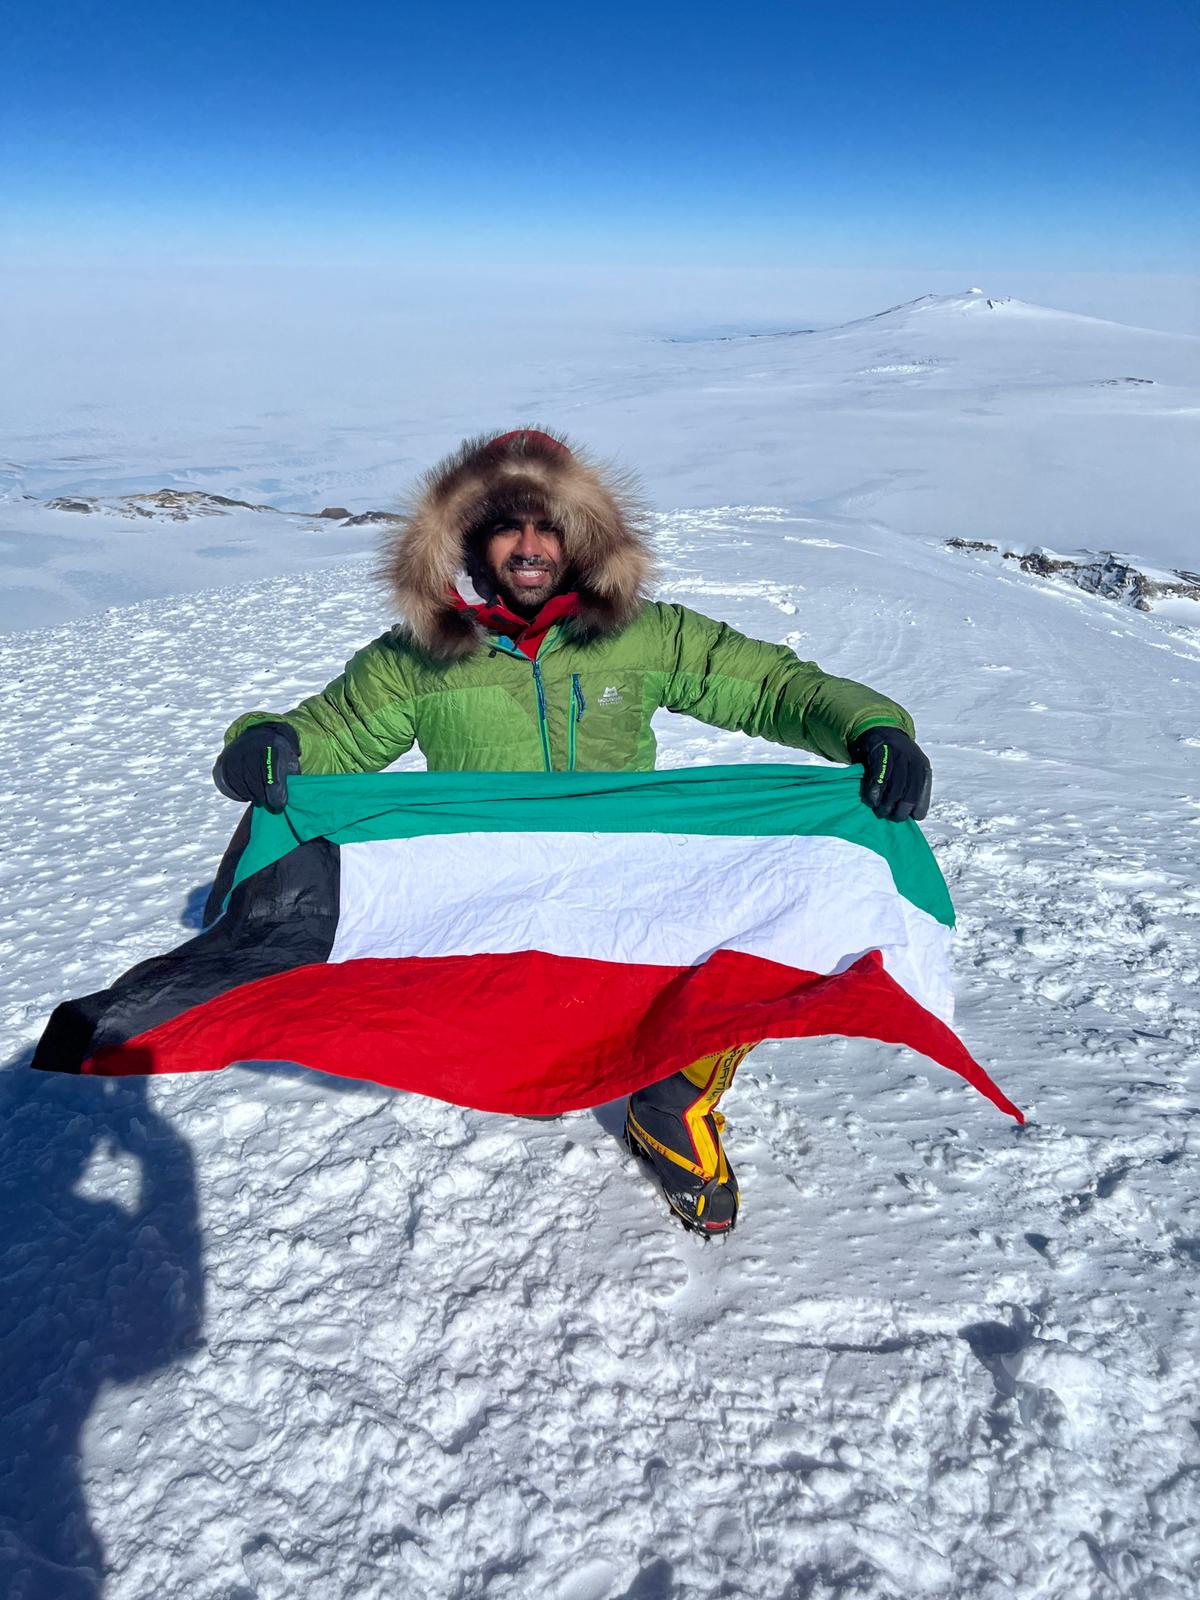 المتسلق الكويتي يوسف الرفاعي يرفع علم الكويت في اعلى قمم بركان سيدلي الواقع في القطب الجنوبي ( انتاركتيكا )